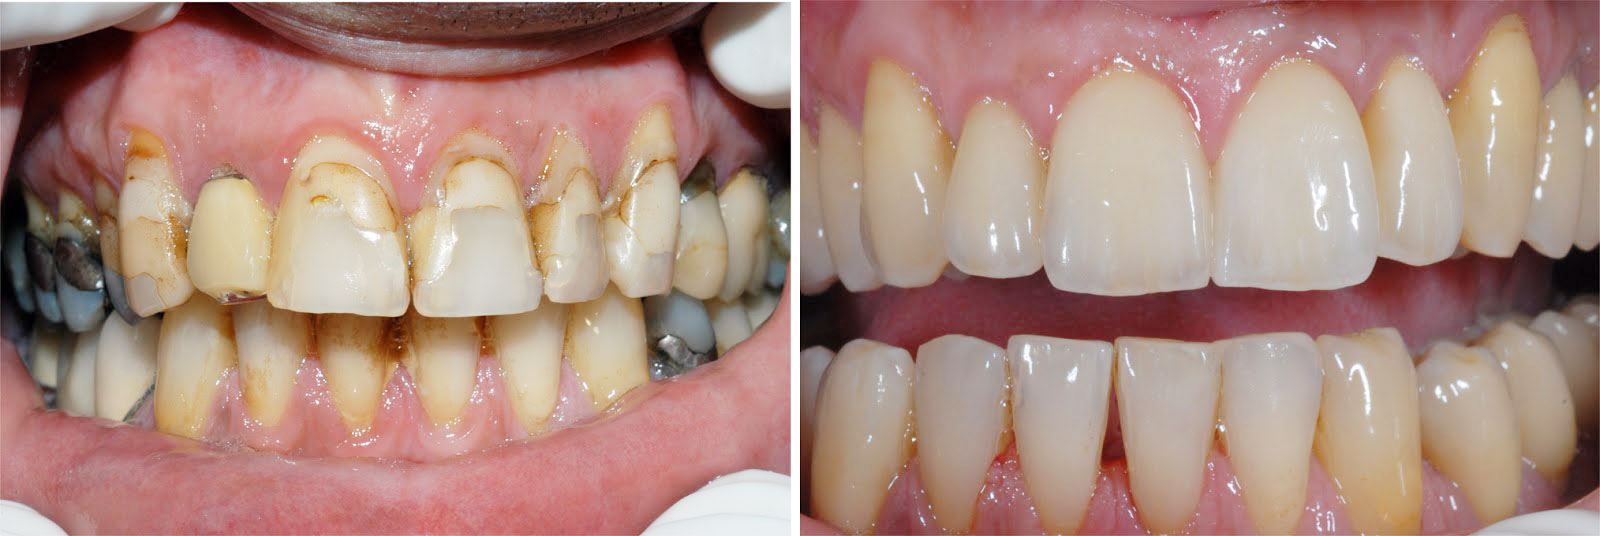 Фото: в эстетической стоматологии коронками исправляют сильно поврежденные или разрушенные зубы